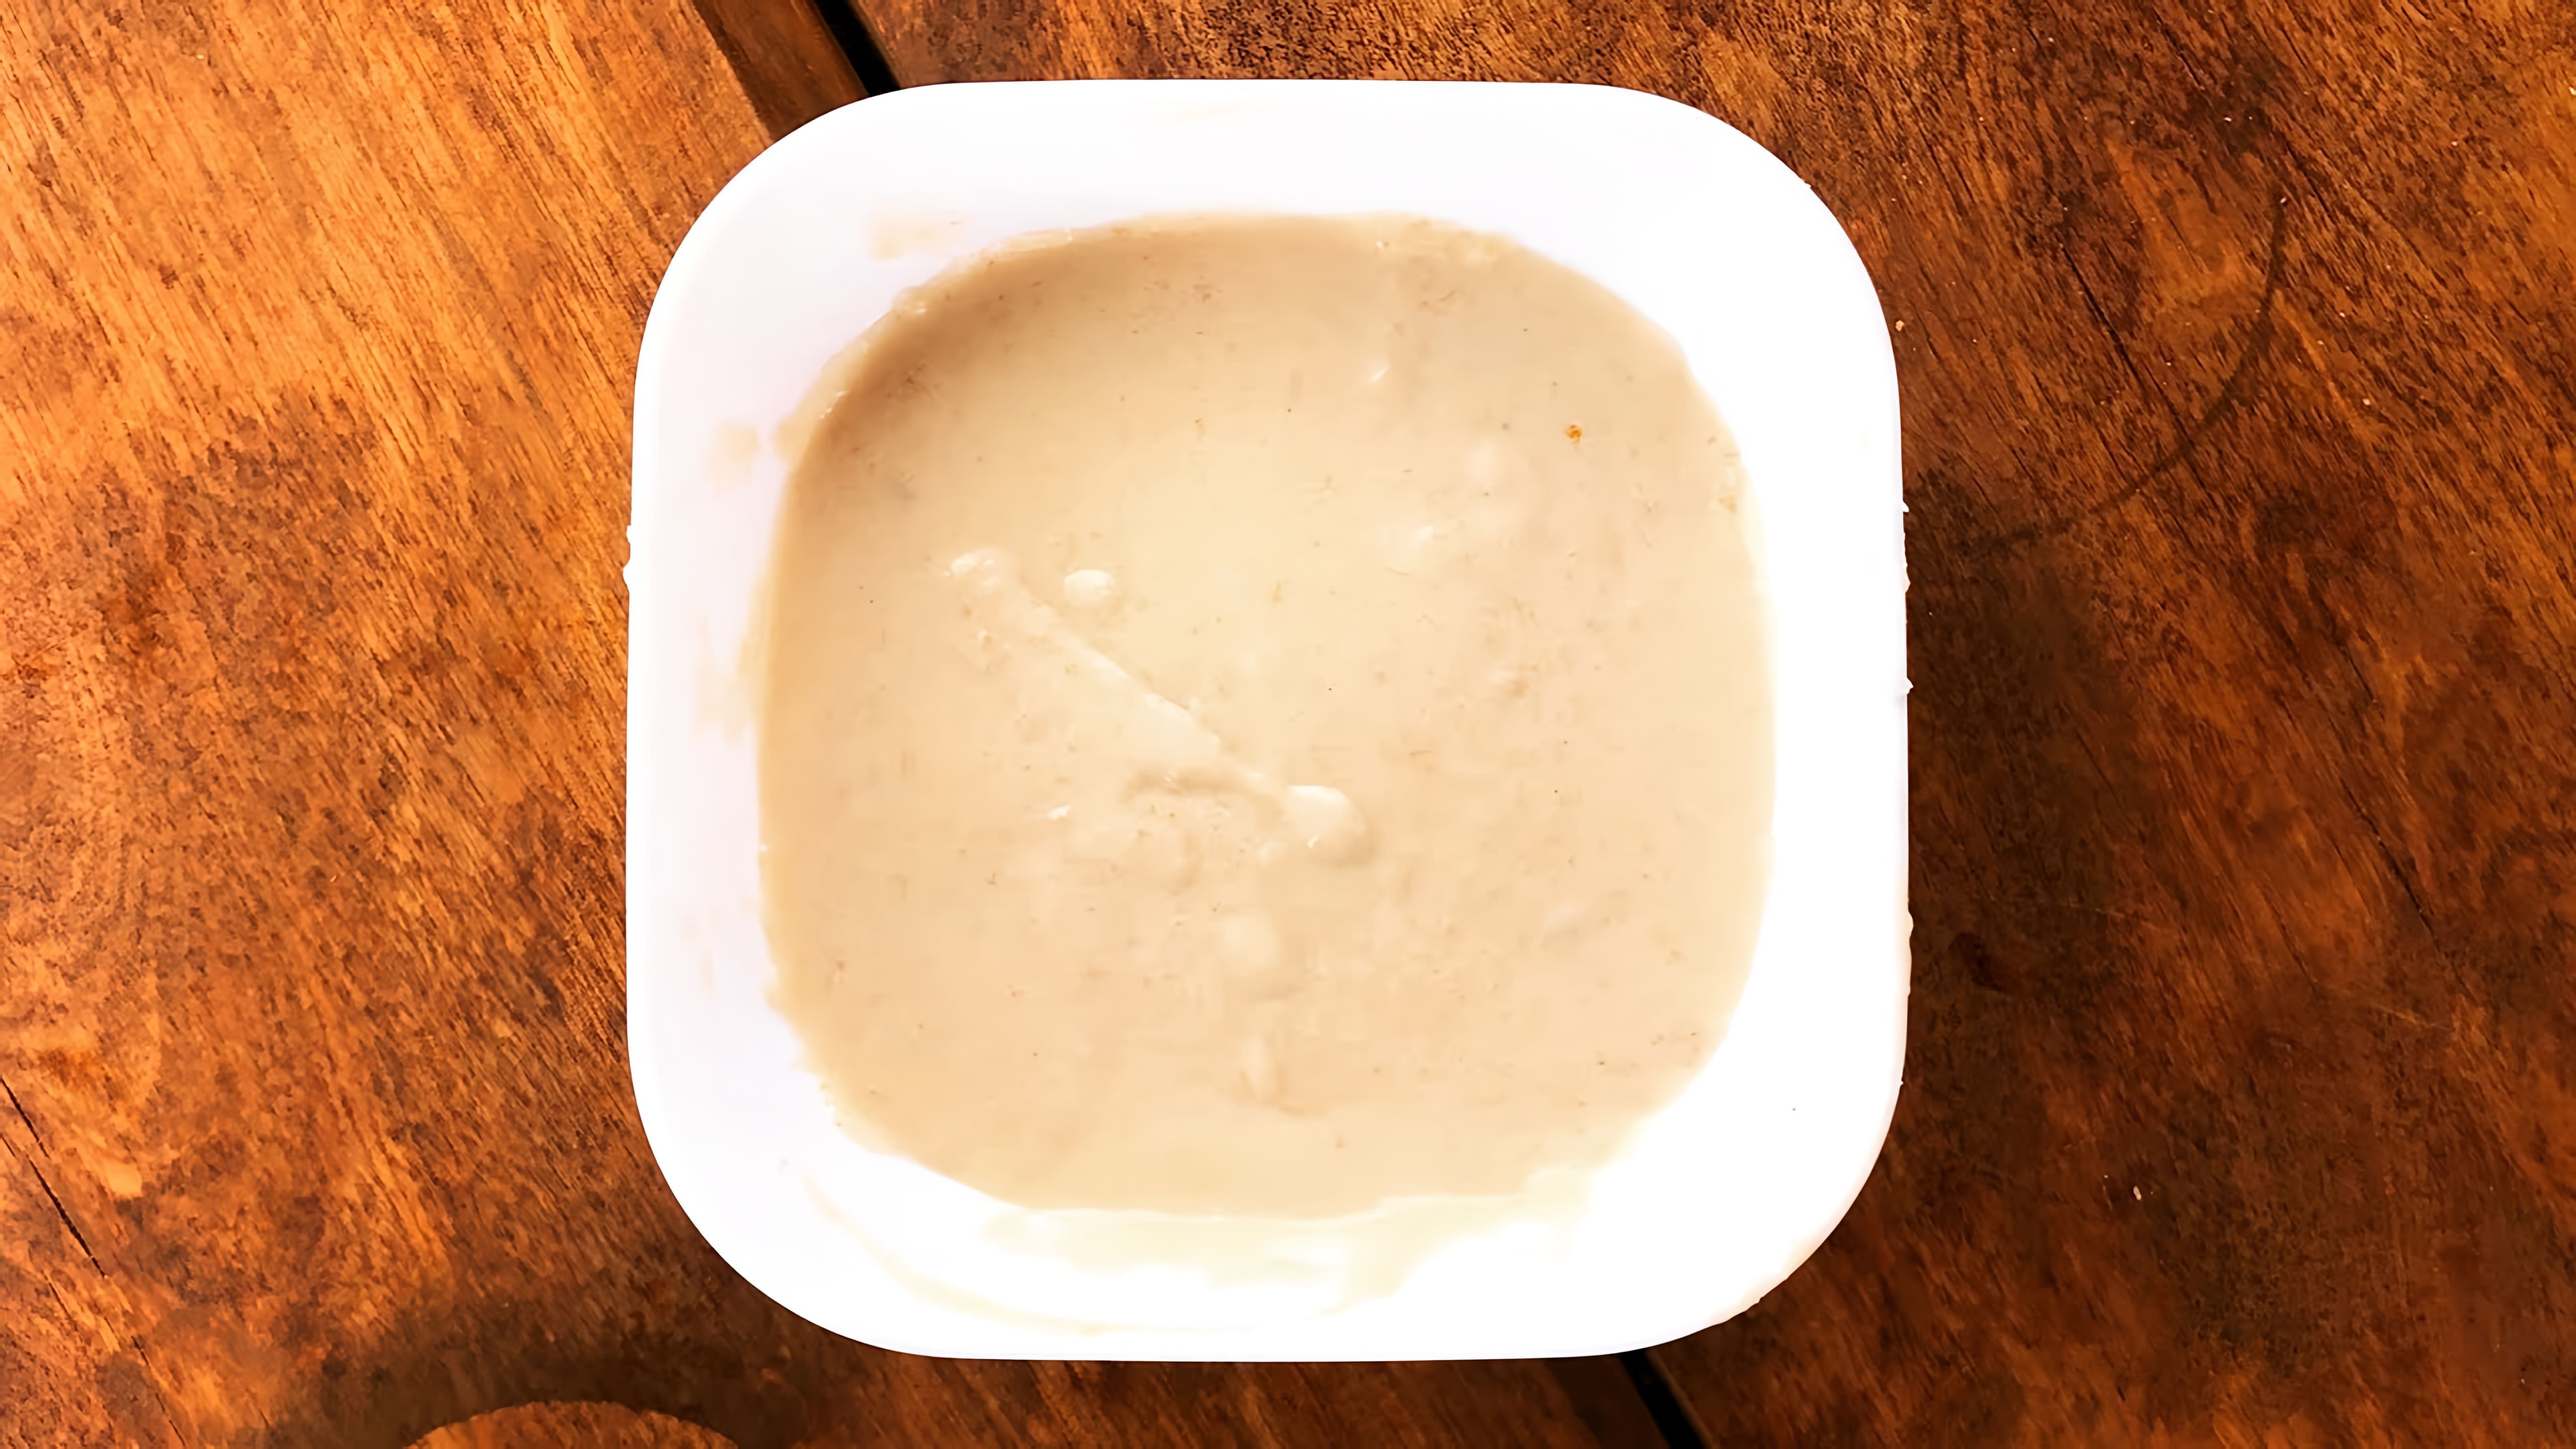 Классический Молочный соус средней густоты - это видео-ролик, который демонстрирует процесс приготовления традиционного молочного соуса